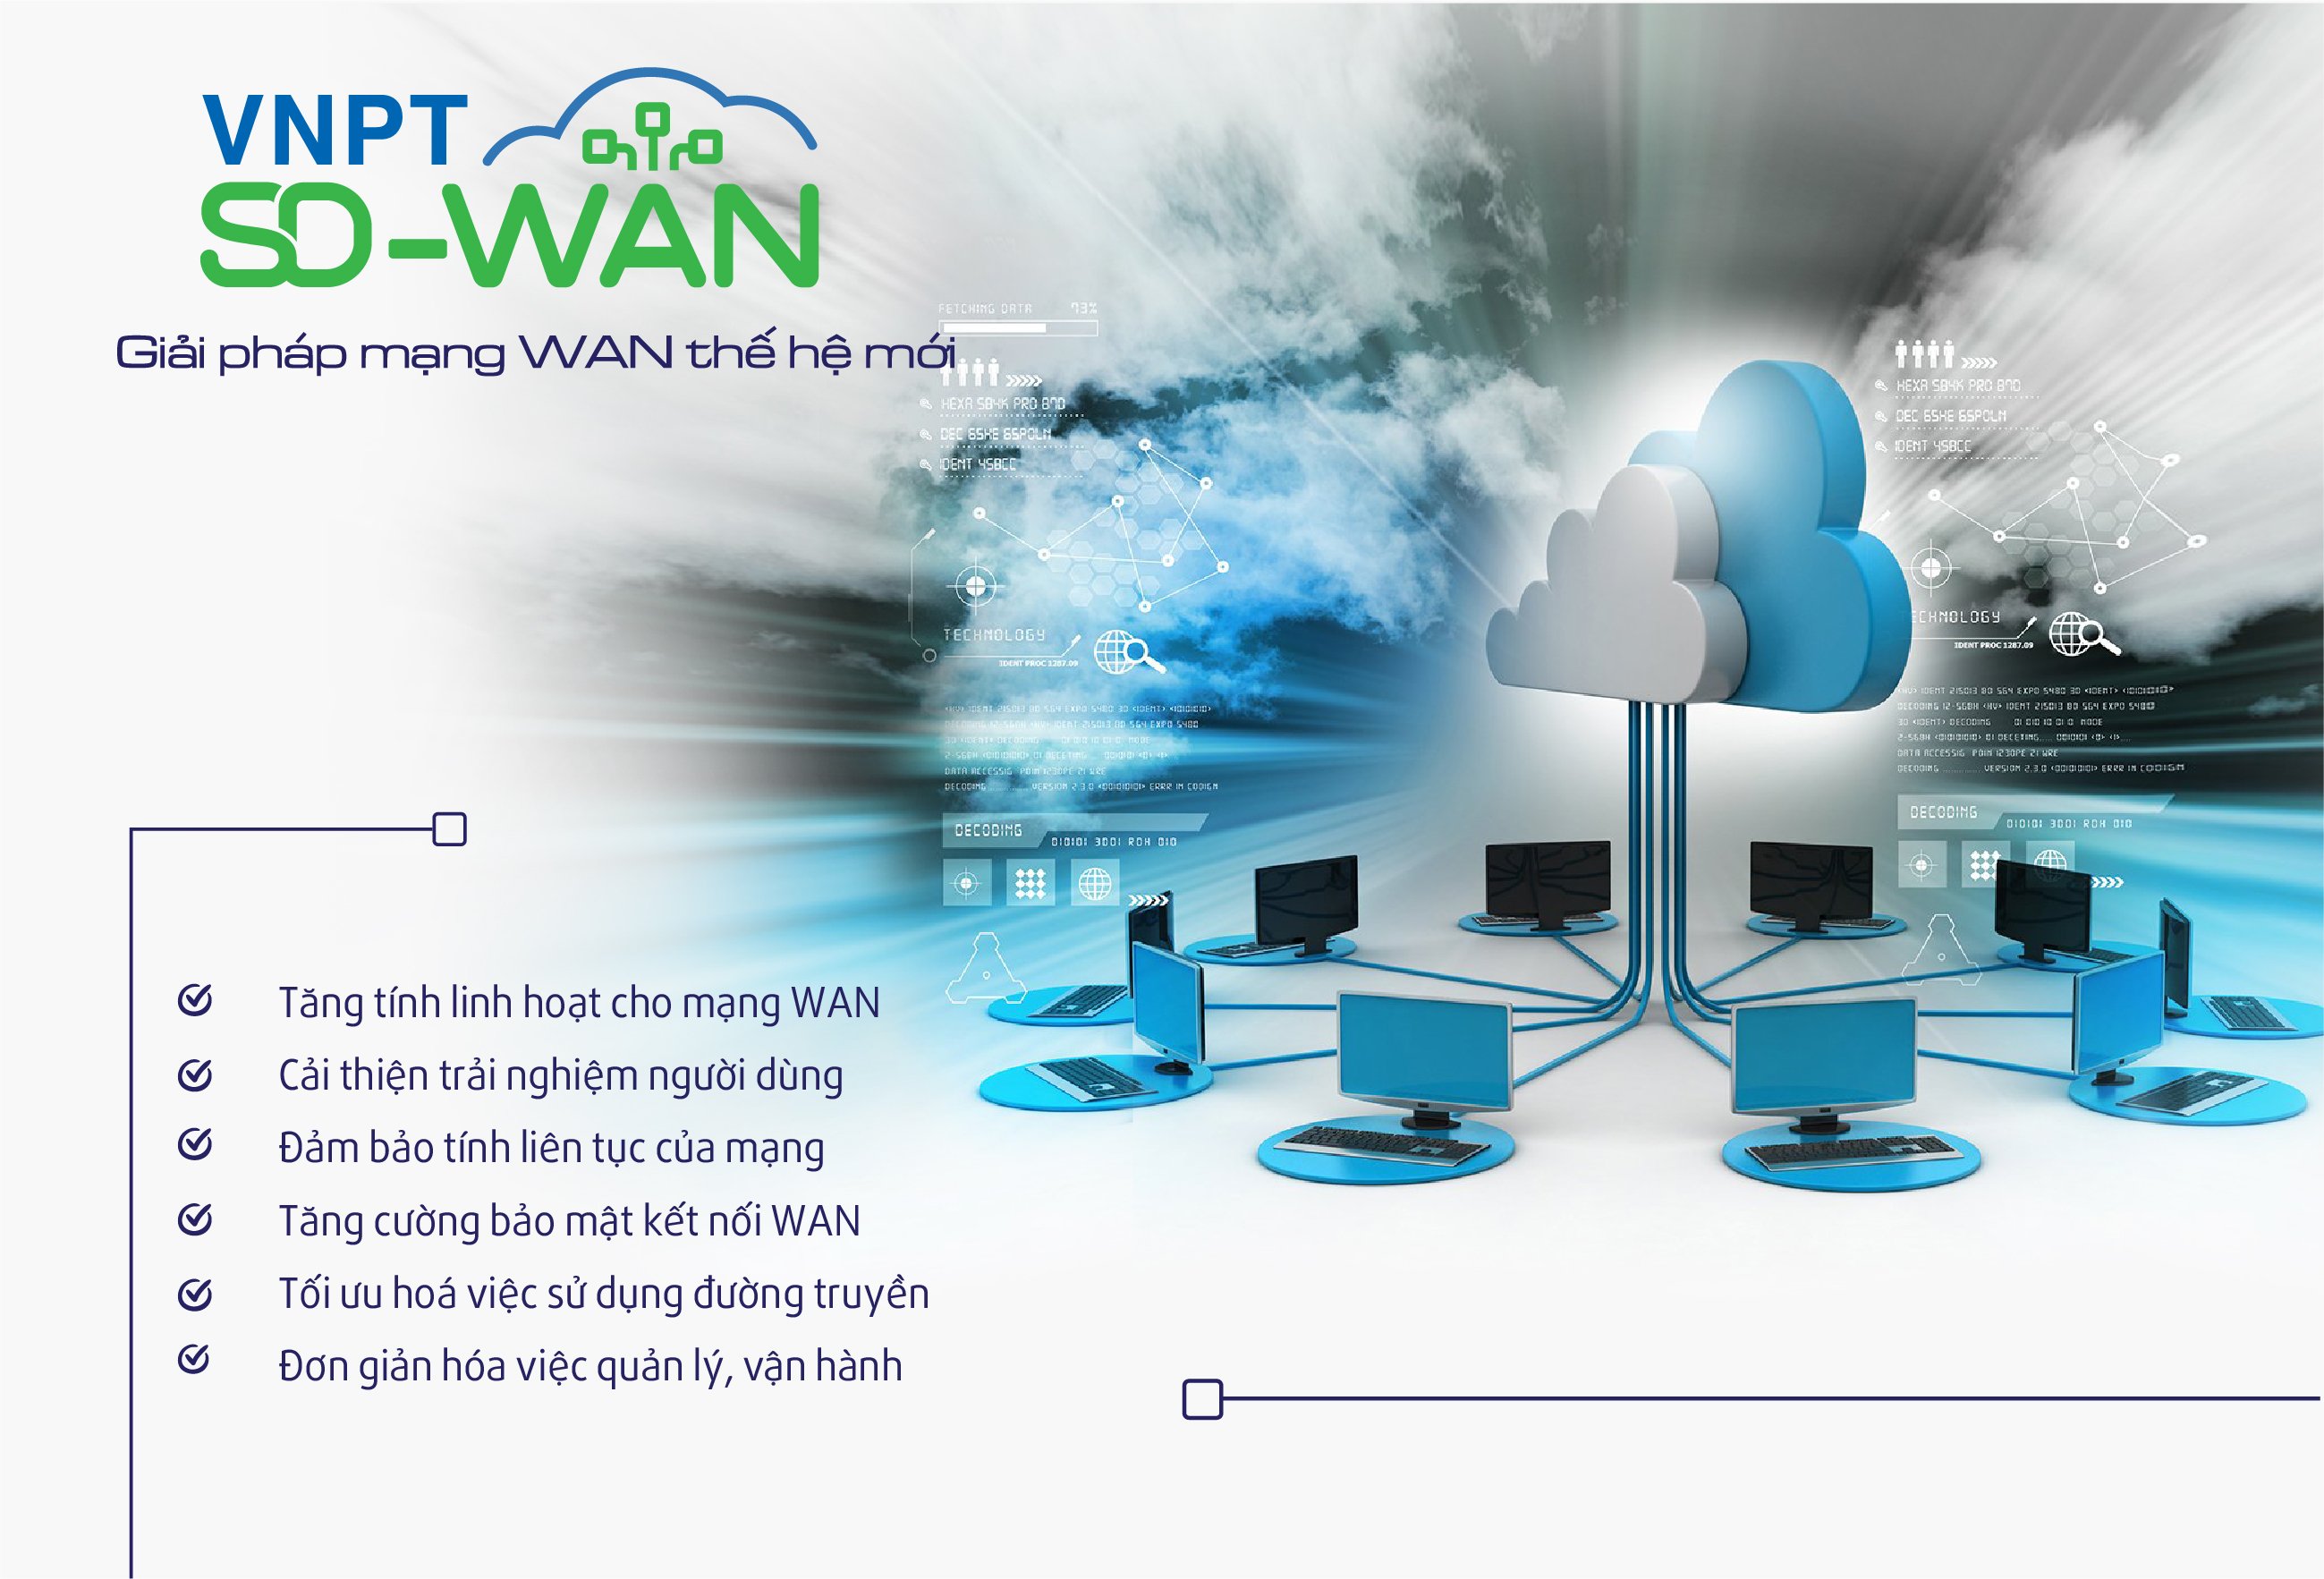 VNPT SD-WAN giải pháp nâng cao hiệu quả sử dụng các kênh truyền dẫn cho Doanh nghiệp